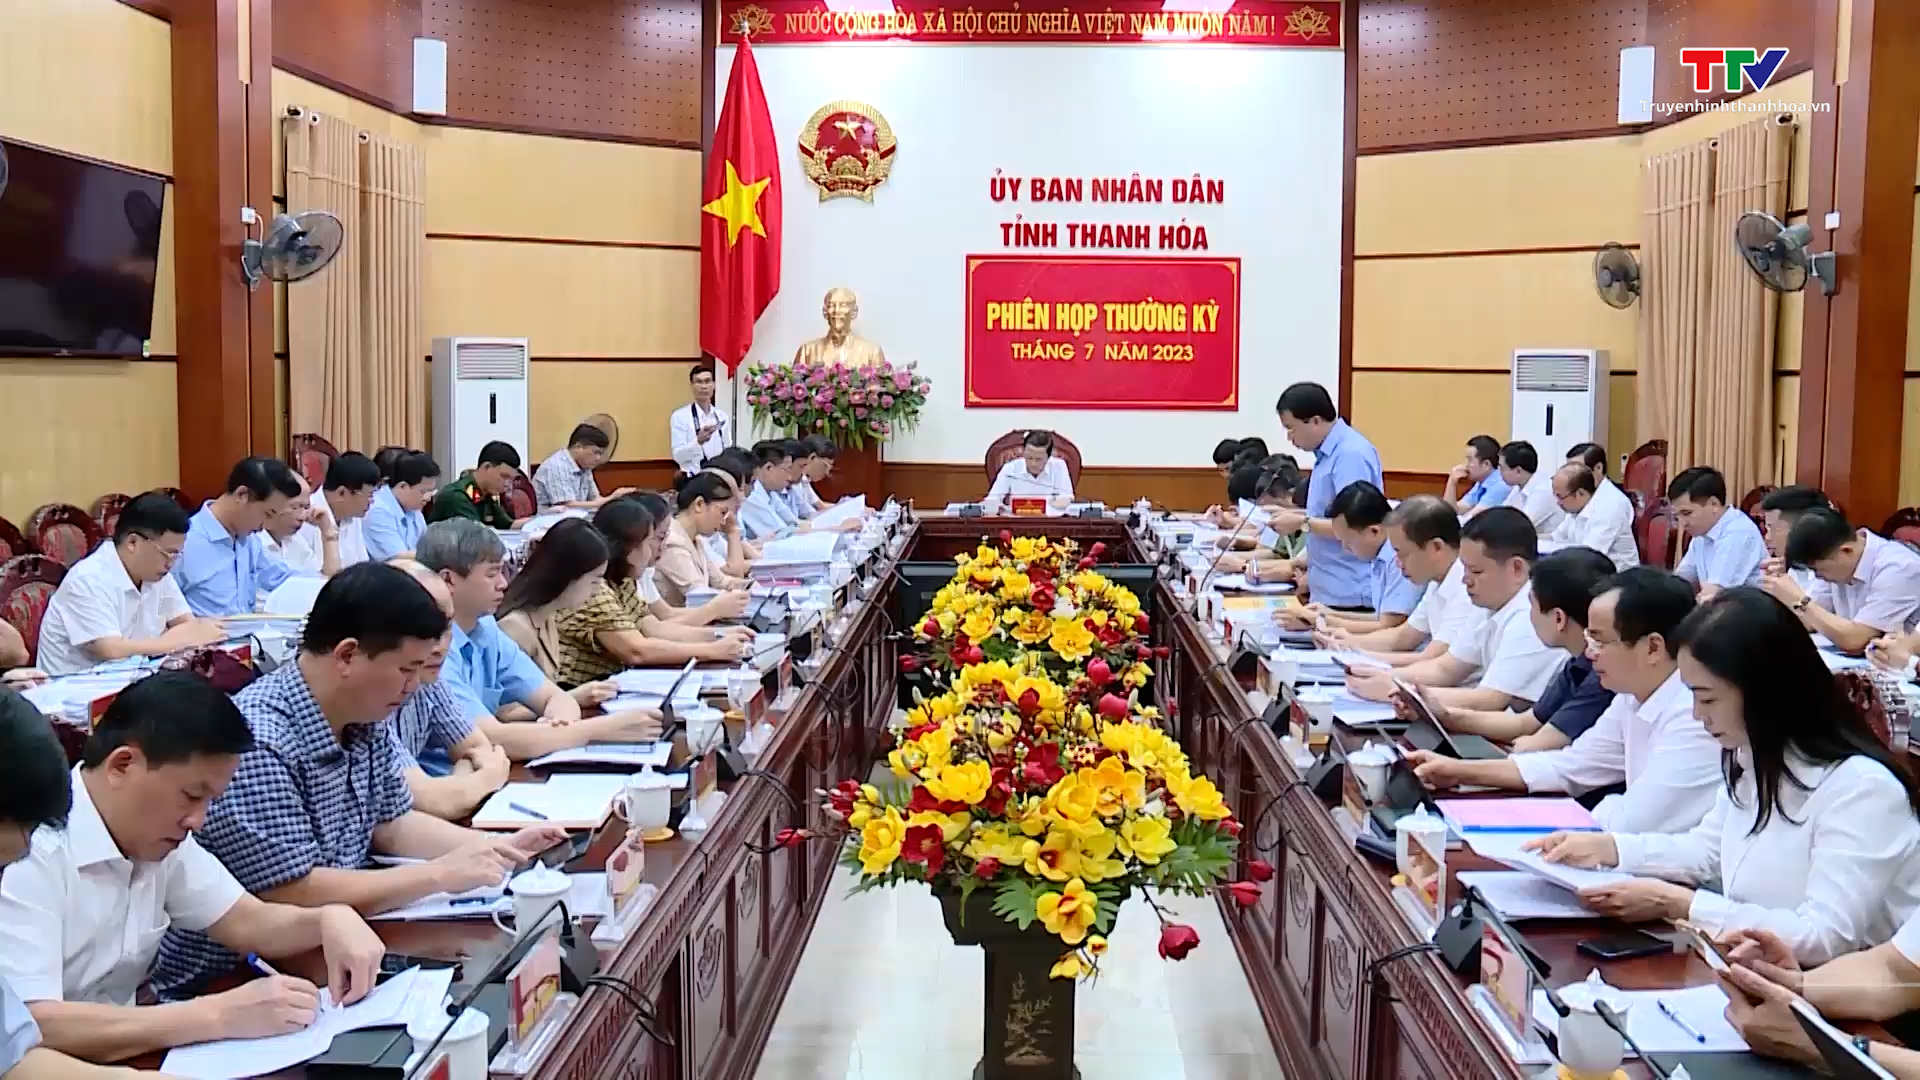 Phiên họp thường kỳ Ủy ban nhân dân tỉnh Thanh Hóa tháng 7/2023 - Ảnh 2.